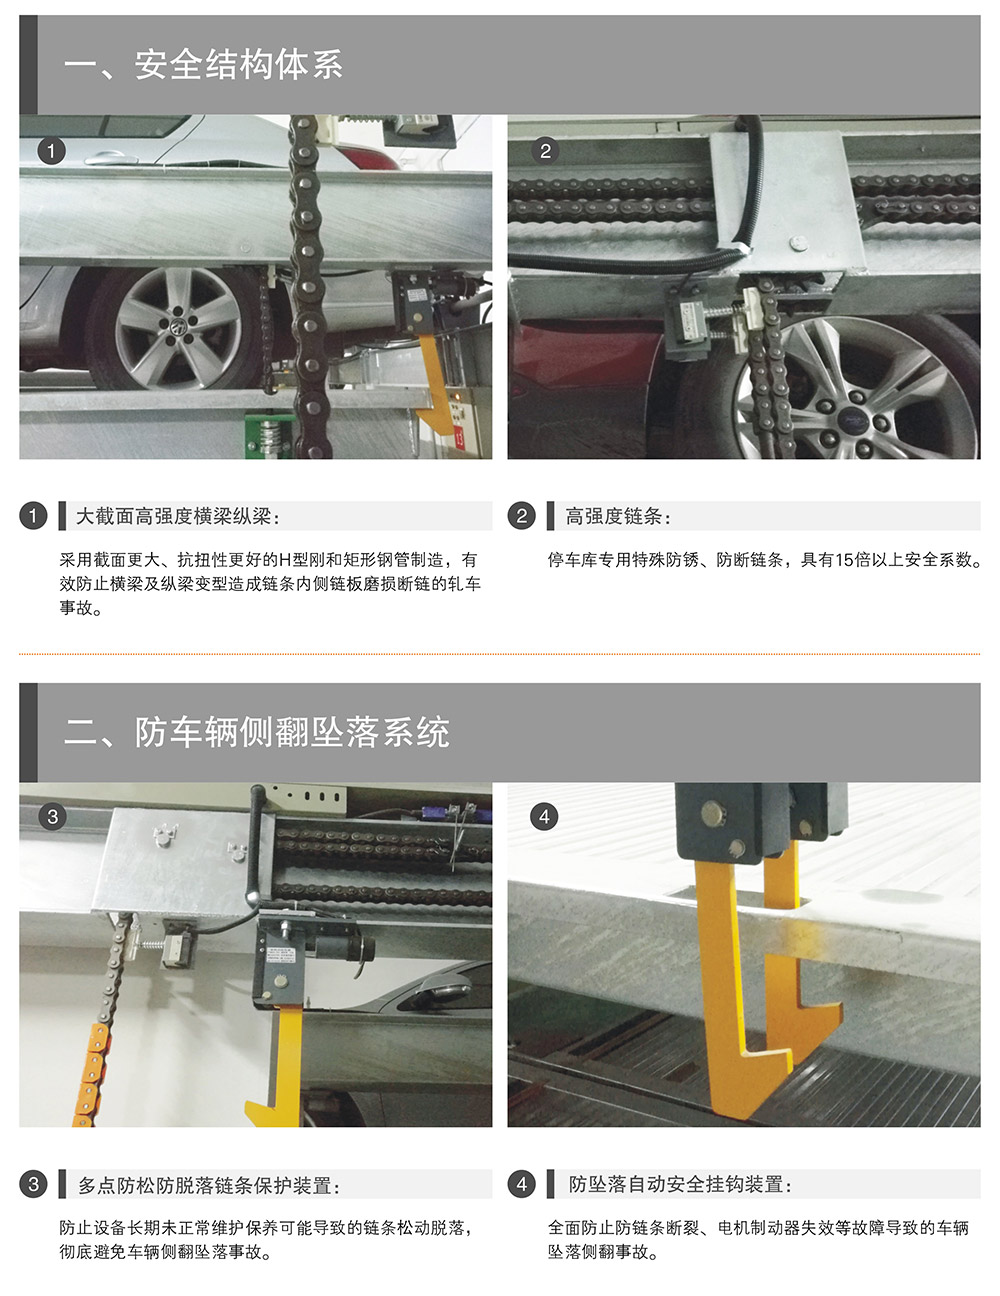 贵阳昆明PSH升降横移停车设备安全结构体系.jpg